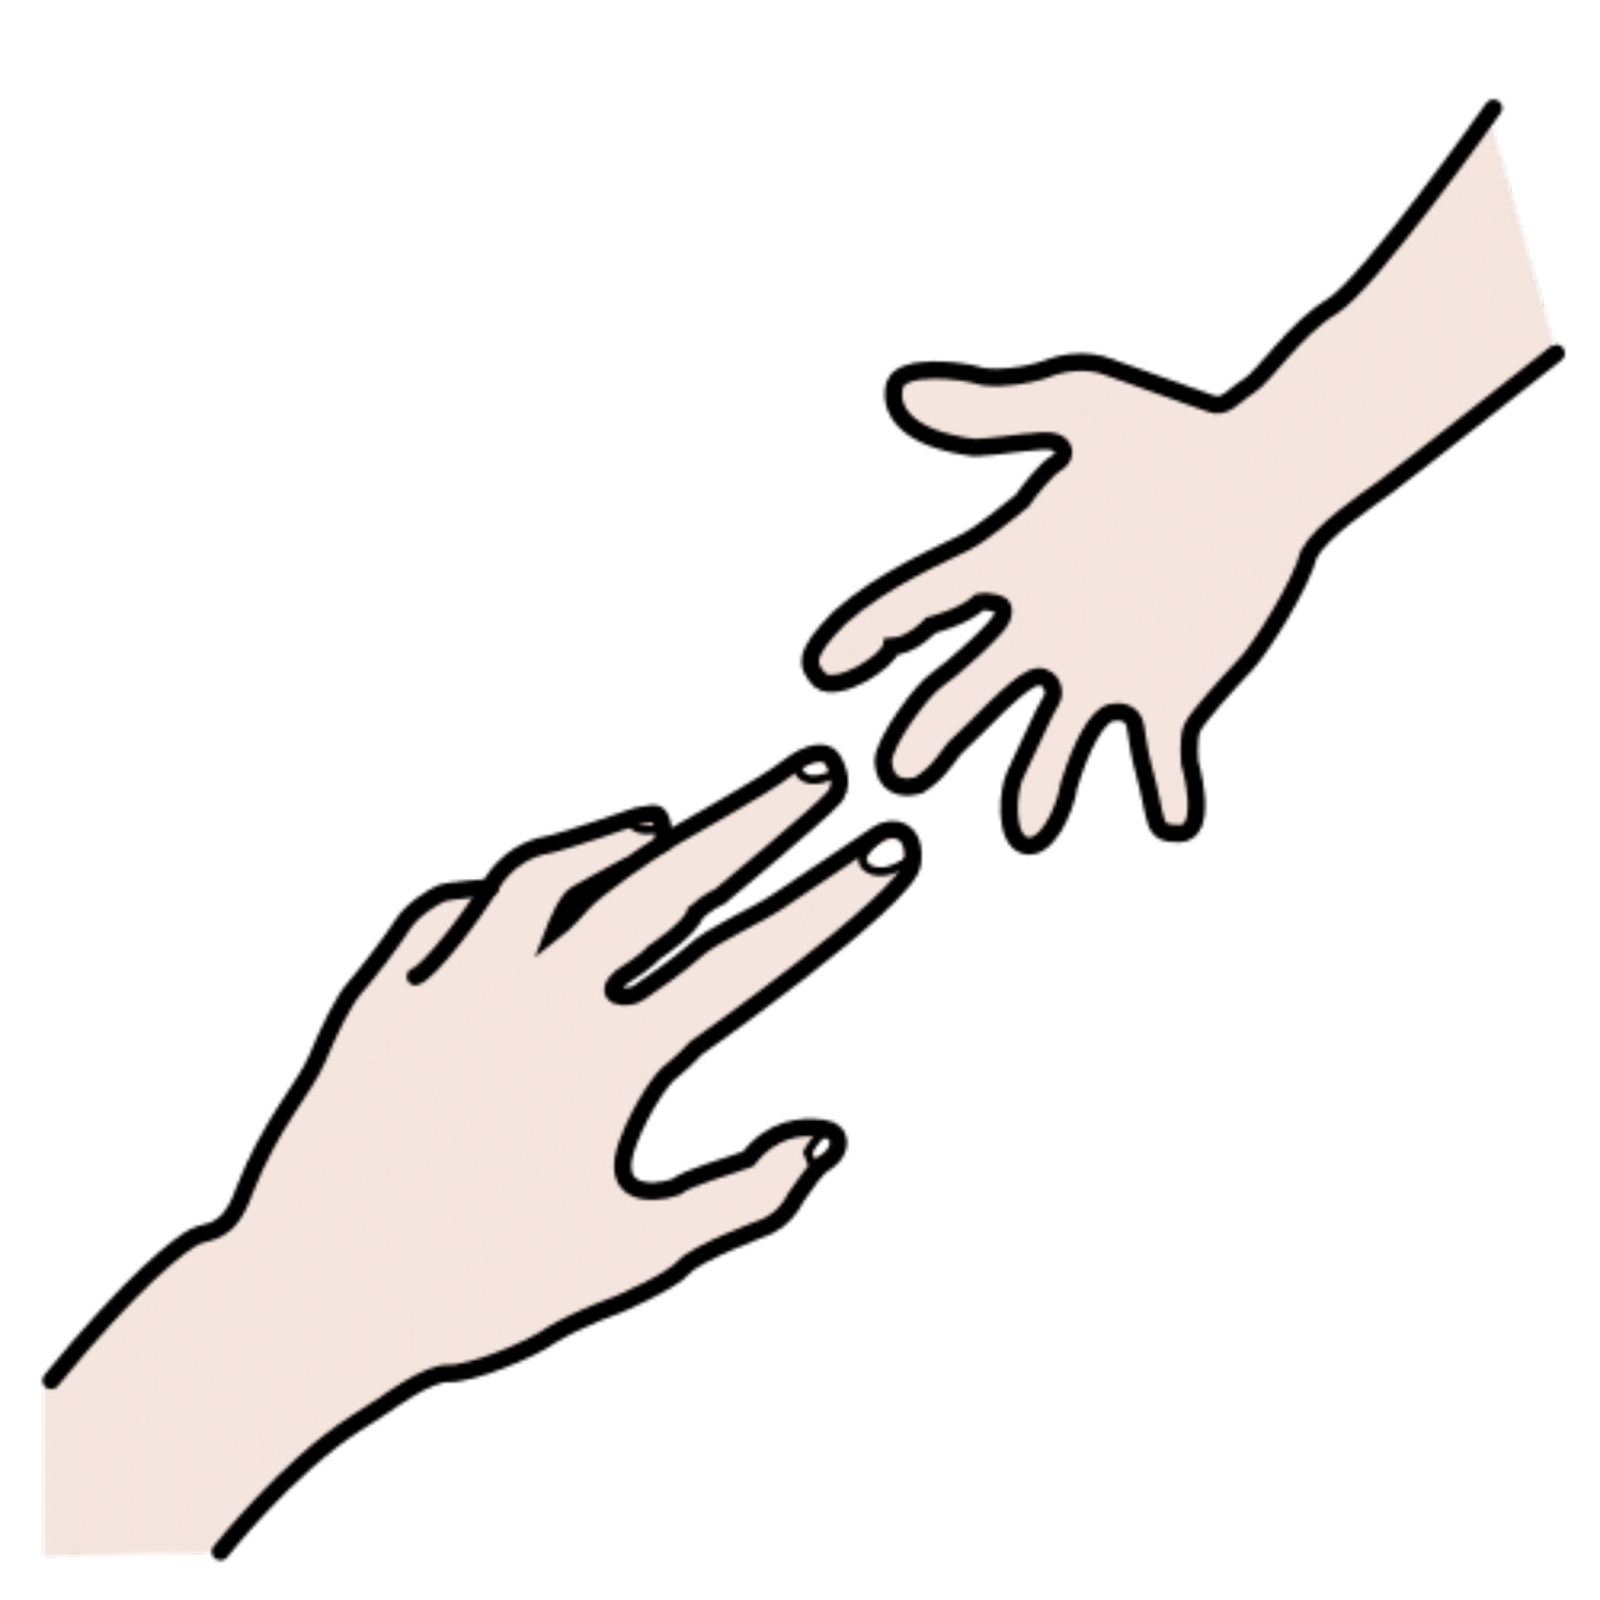 La imagen muestra dos manos que se quieren alcanzar.